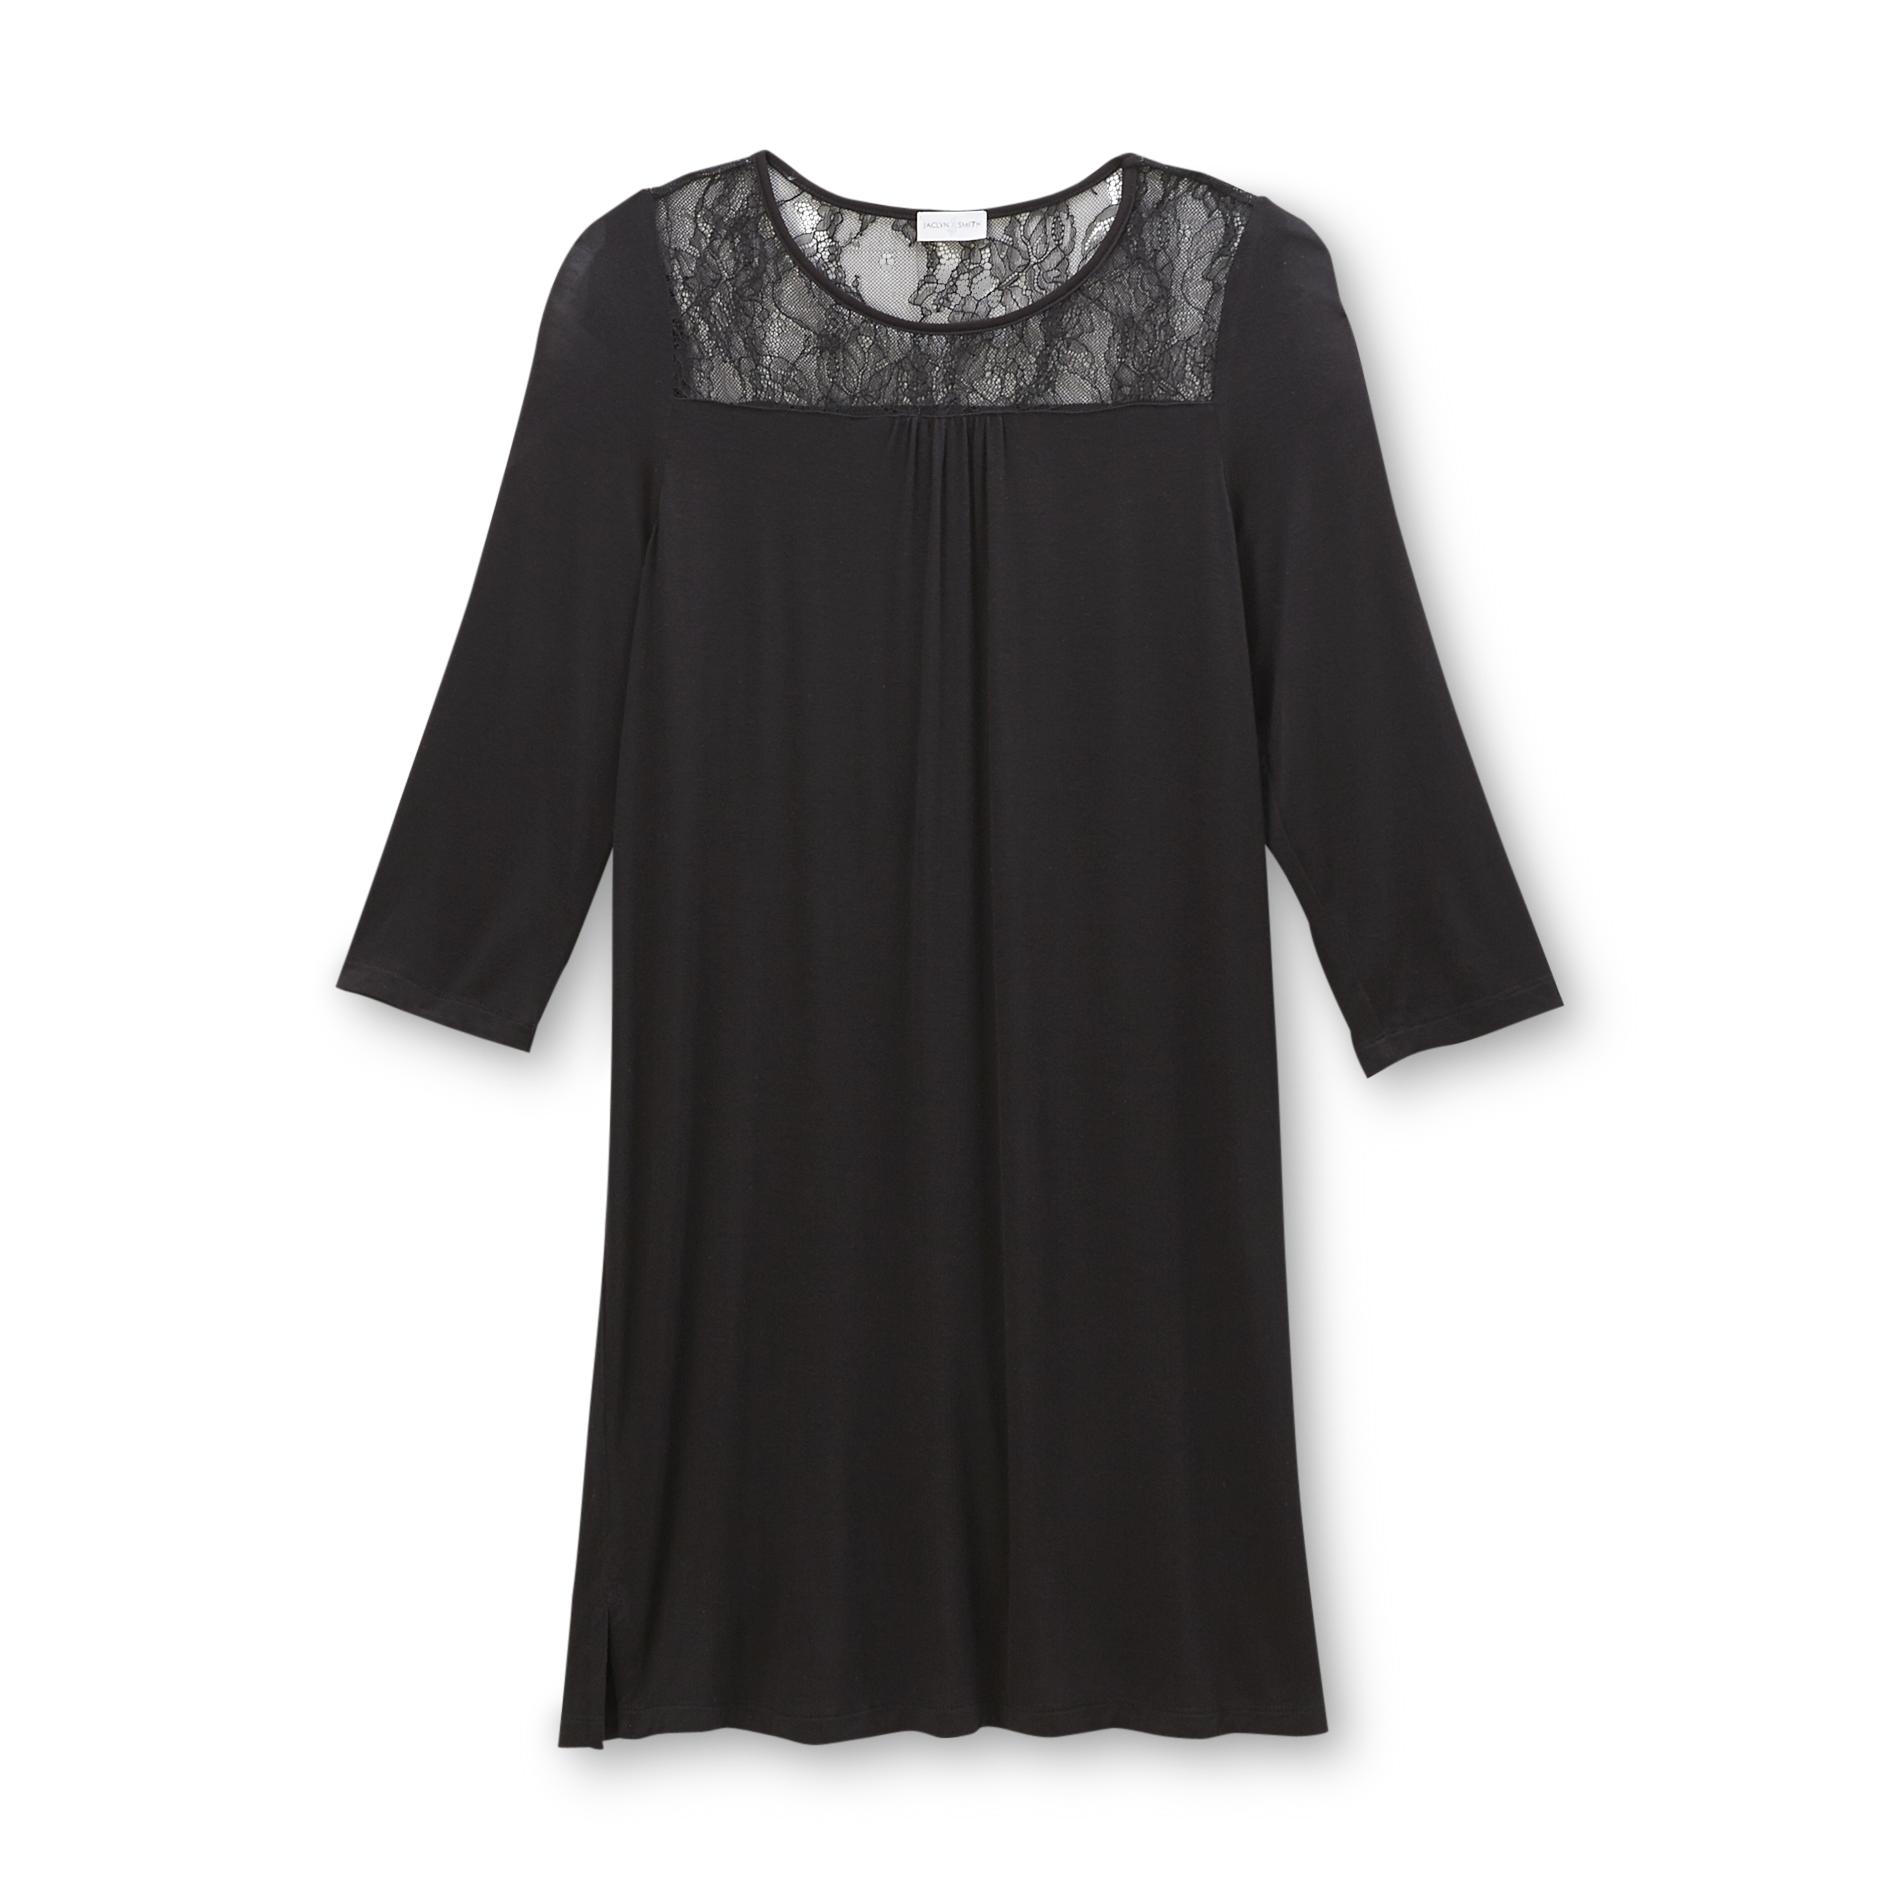 Jaclyn Smith Women's Long-Sleeve Nightgown